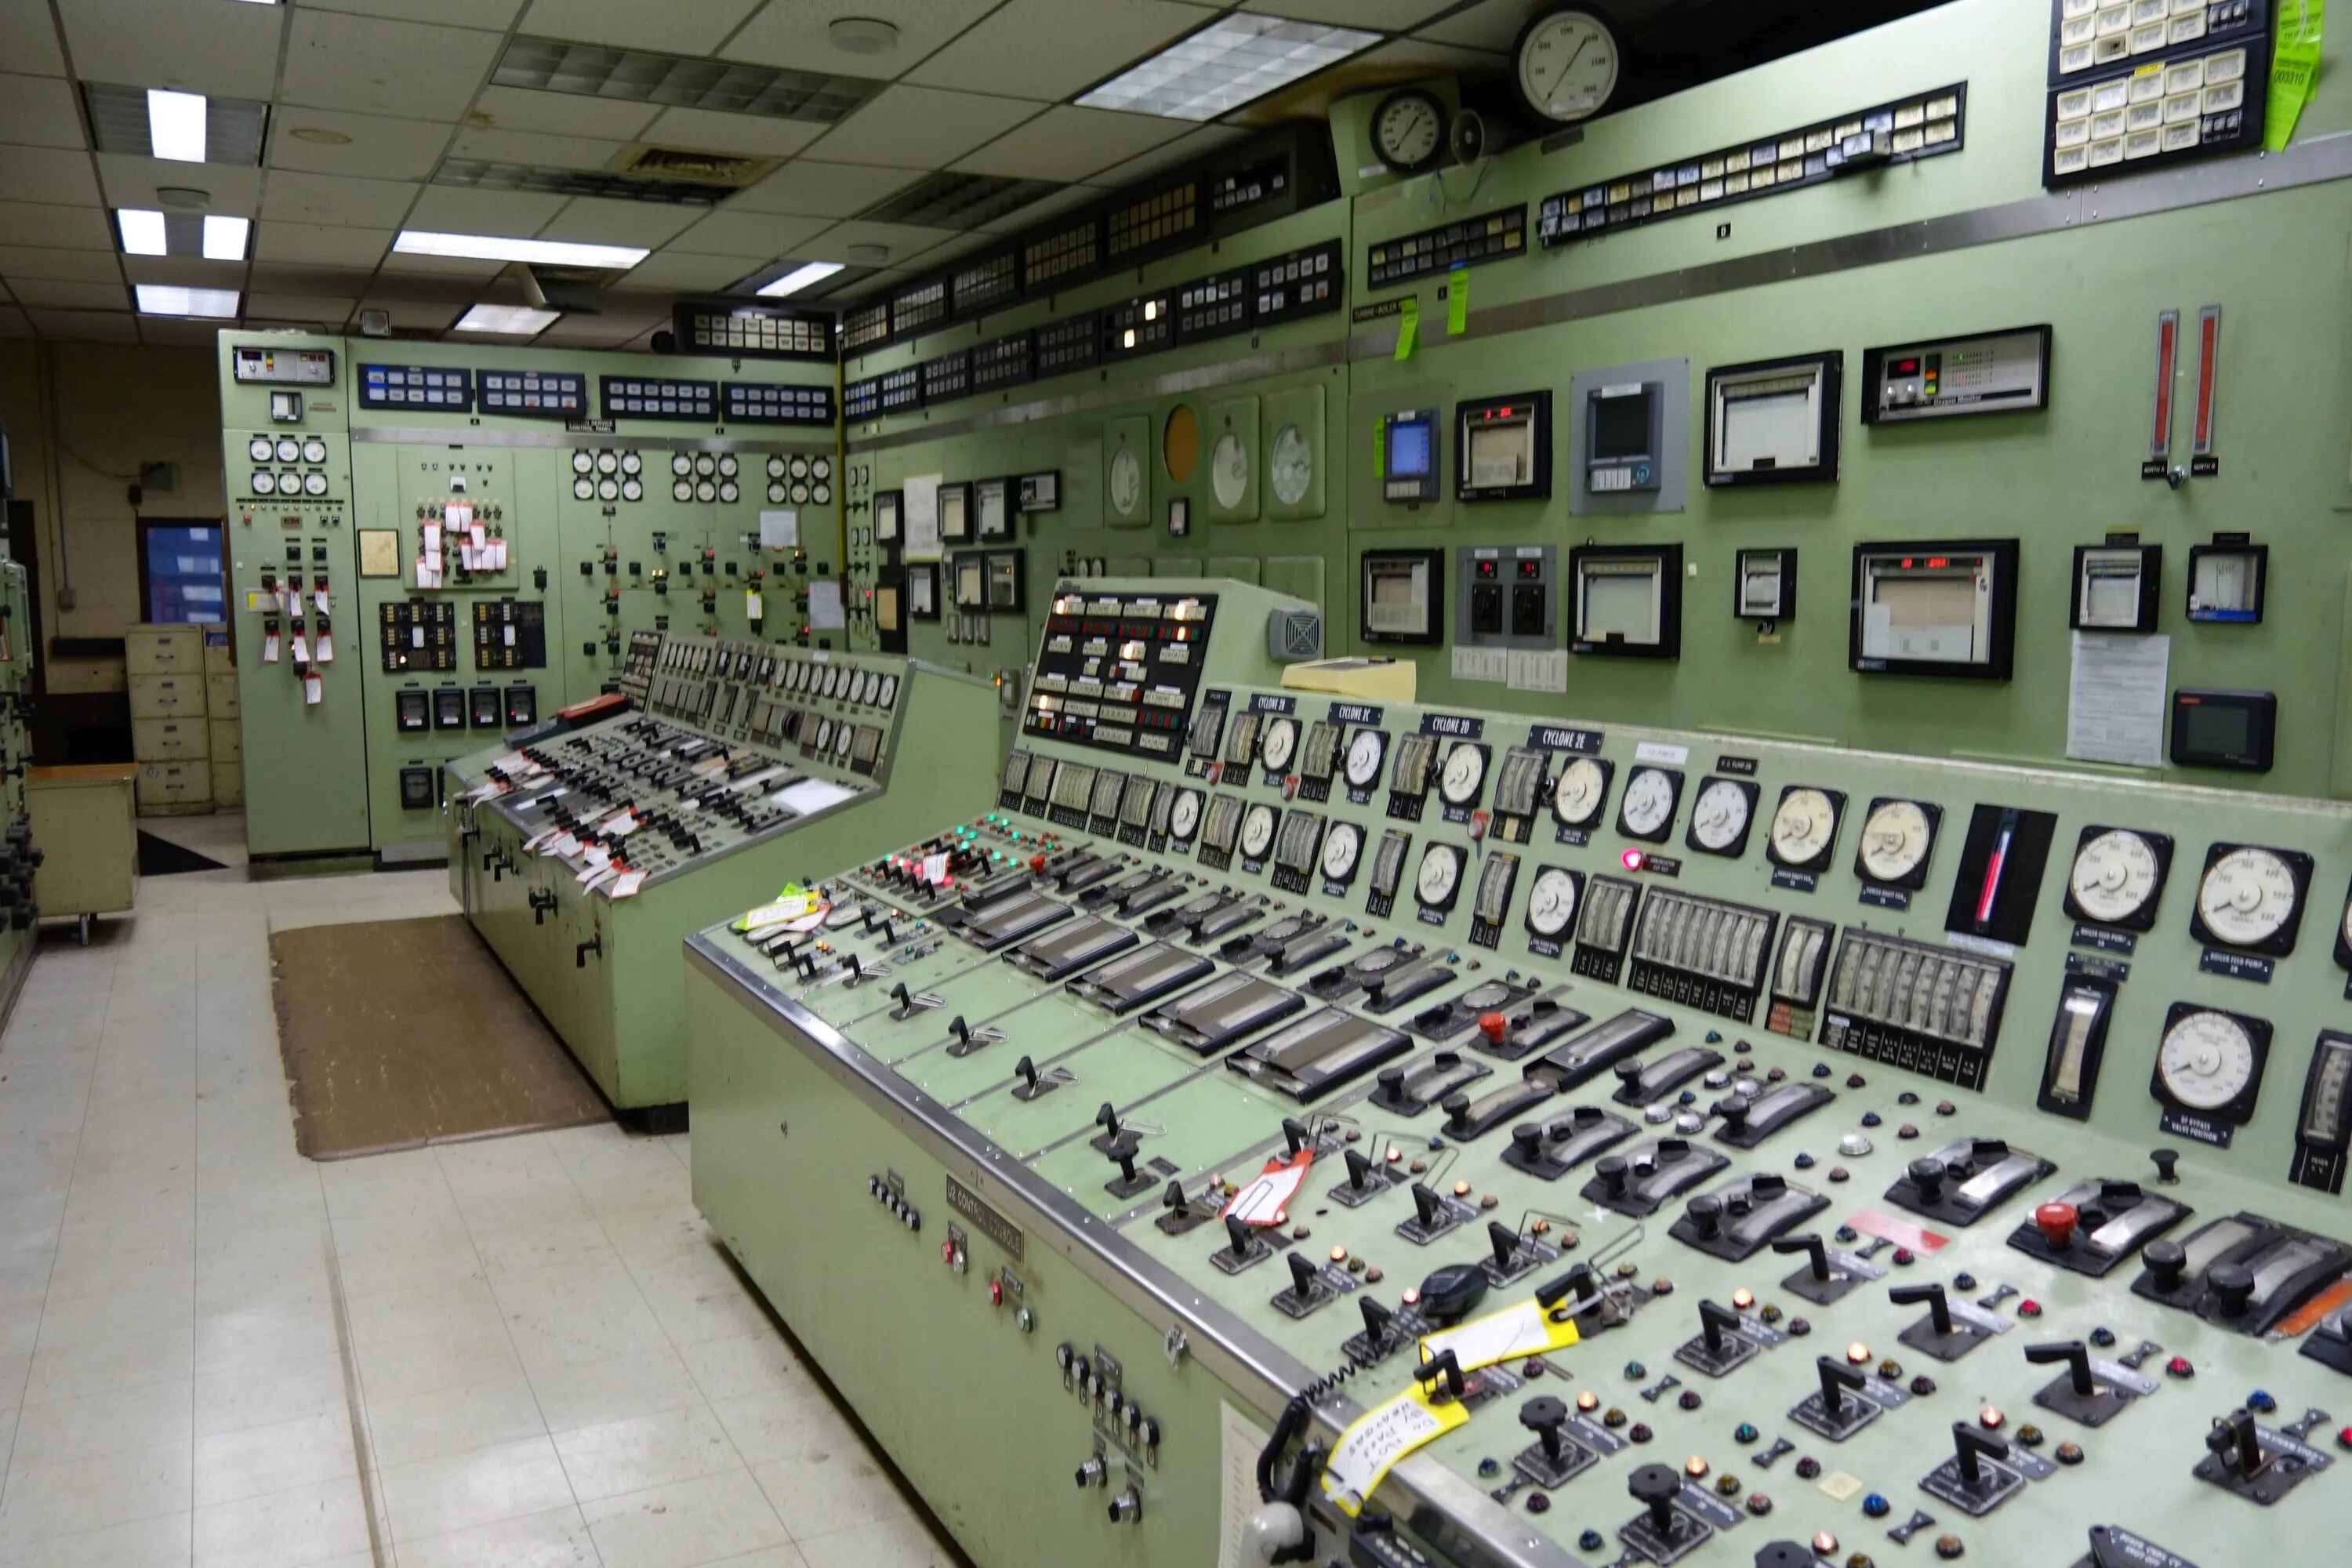 Power Plant Control Room. Nuclear Reactor Control Room. Nuclear Power Plant Control Room. Обнинская АЭС пульт управления. Control old